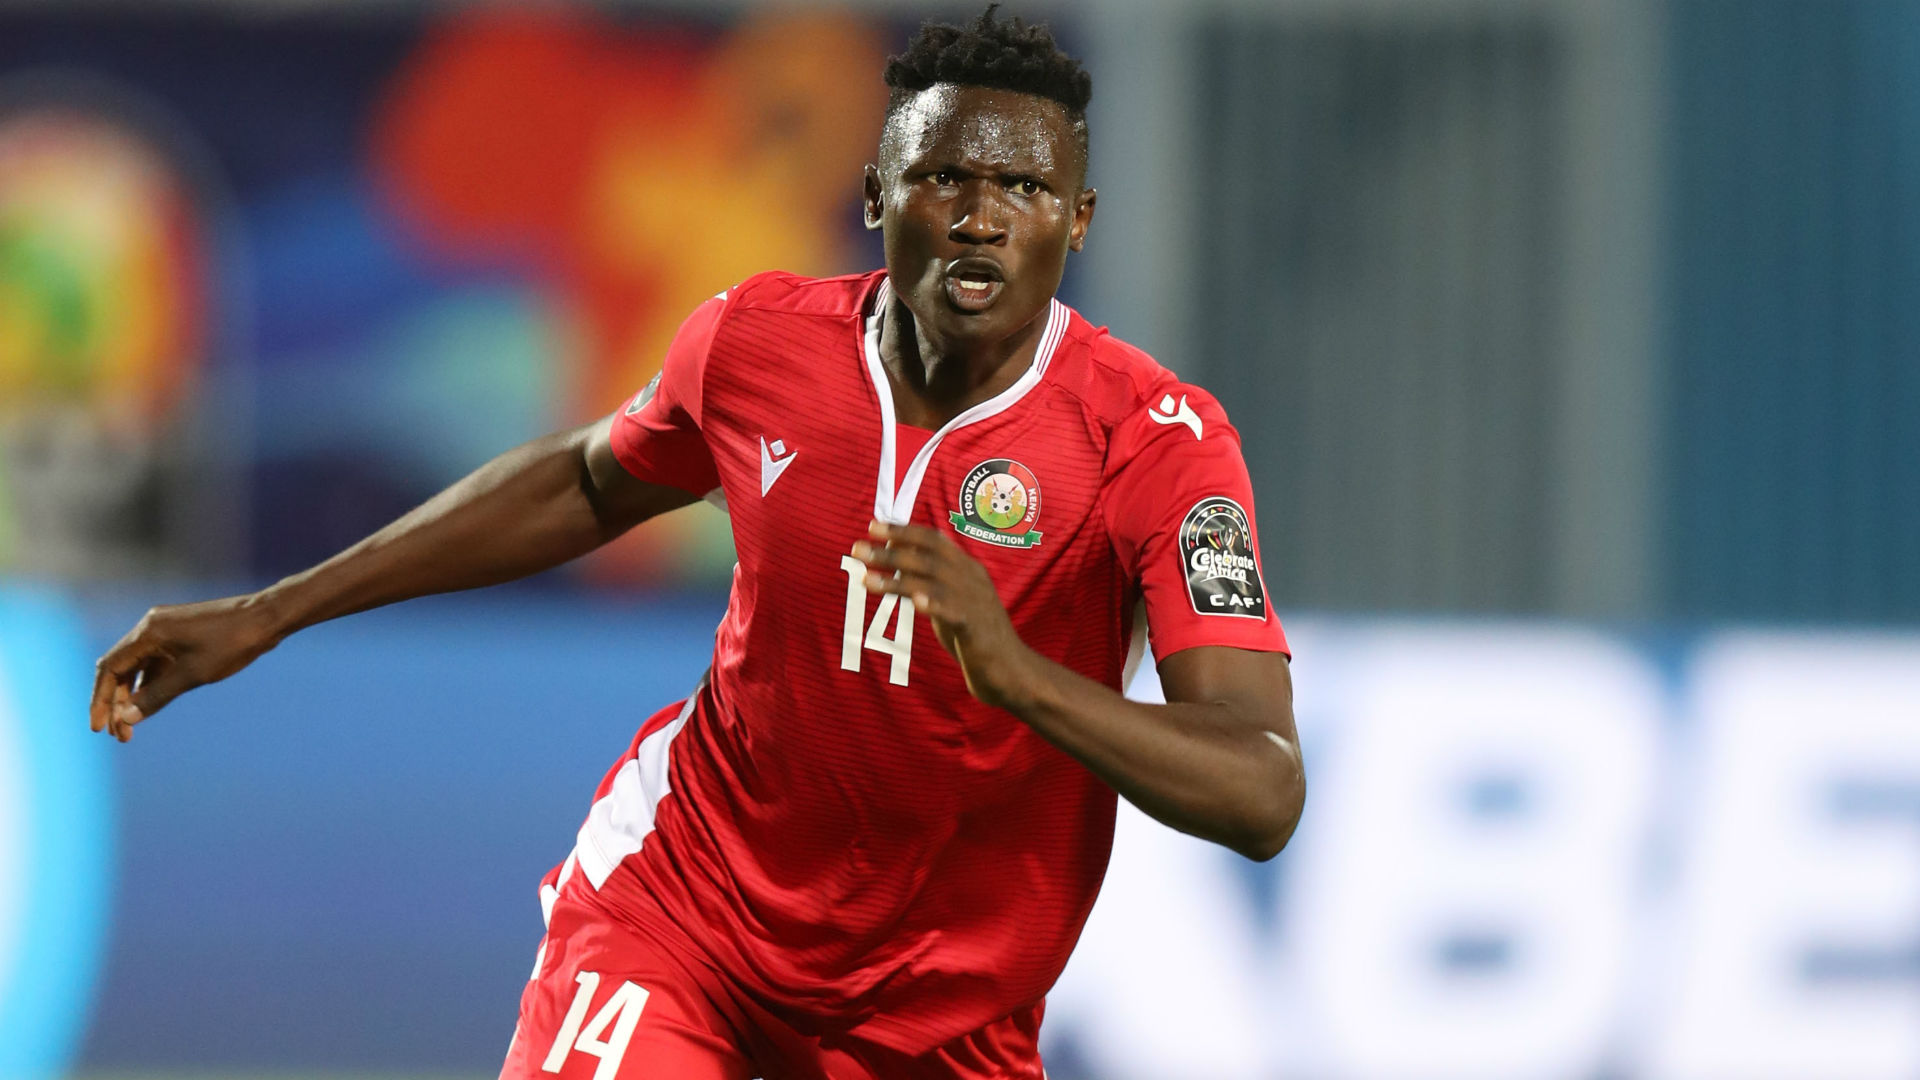 Afcon 2019 Live Blog: Kenya, Madagascar & Algeria win | Goal.com